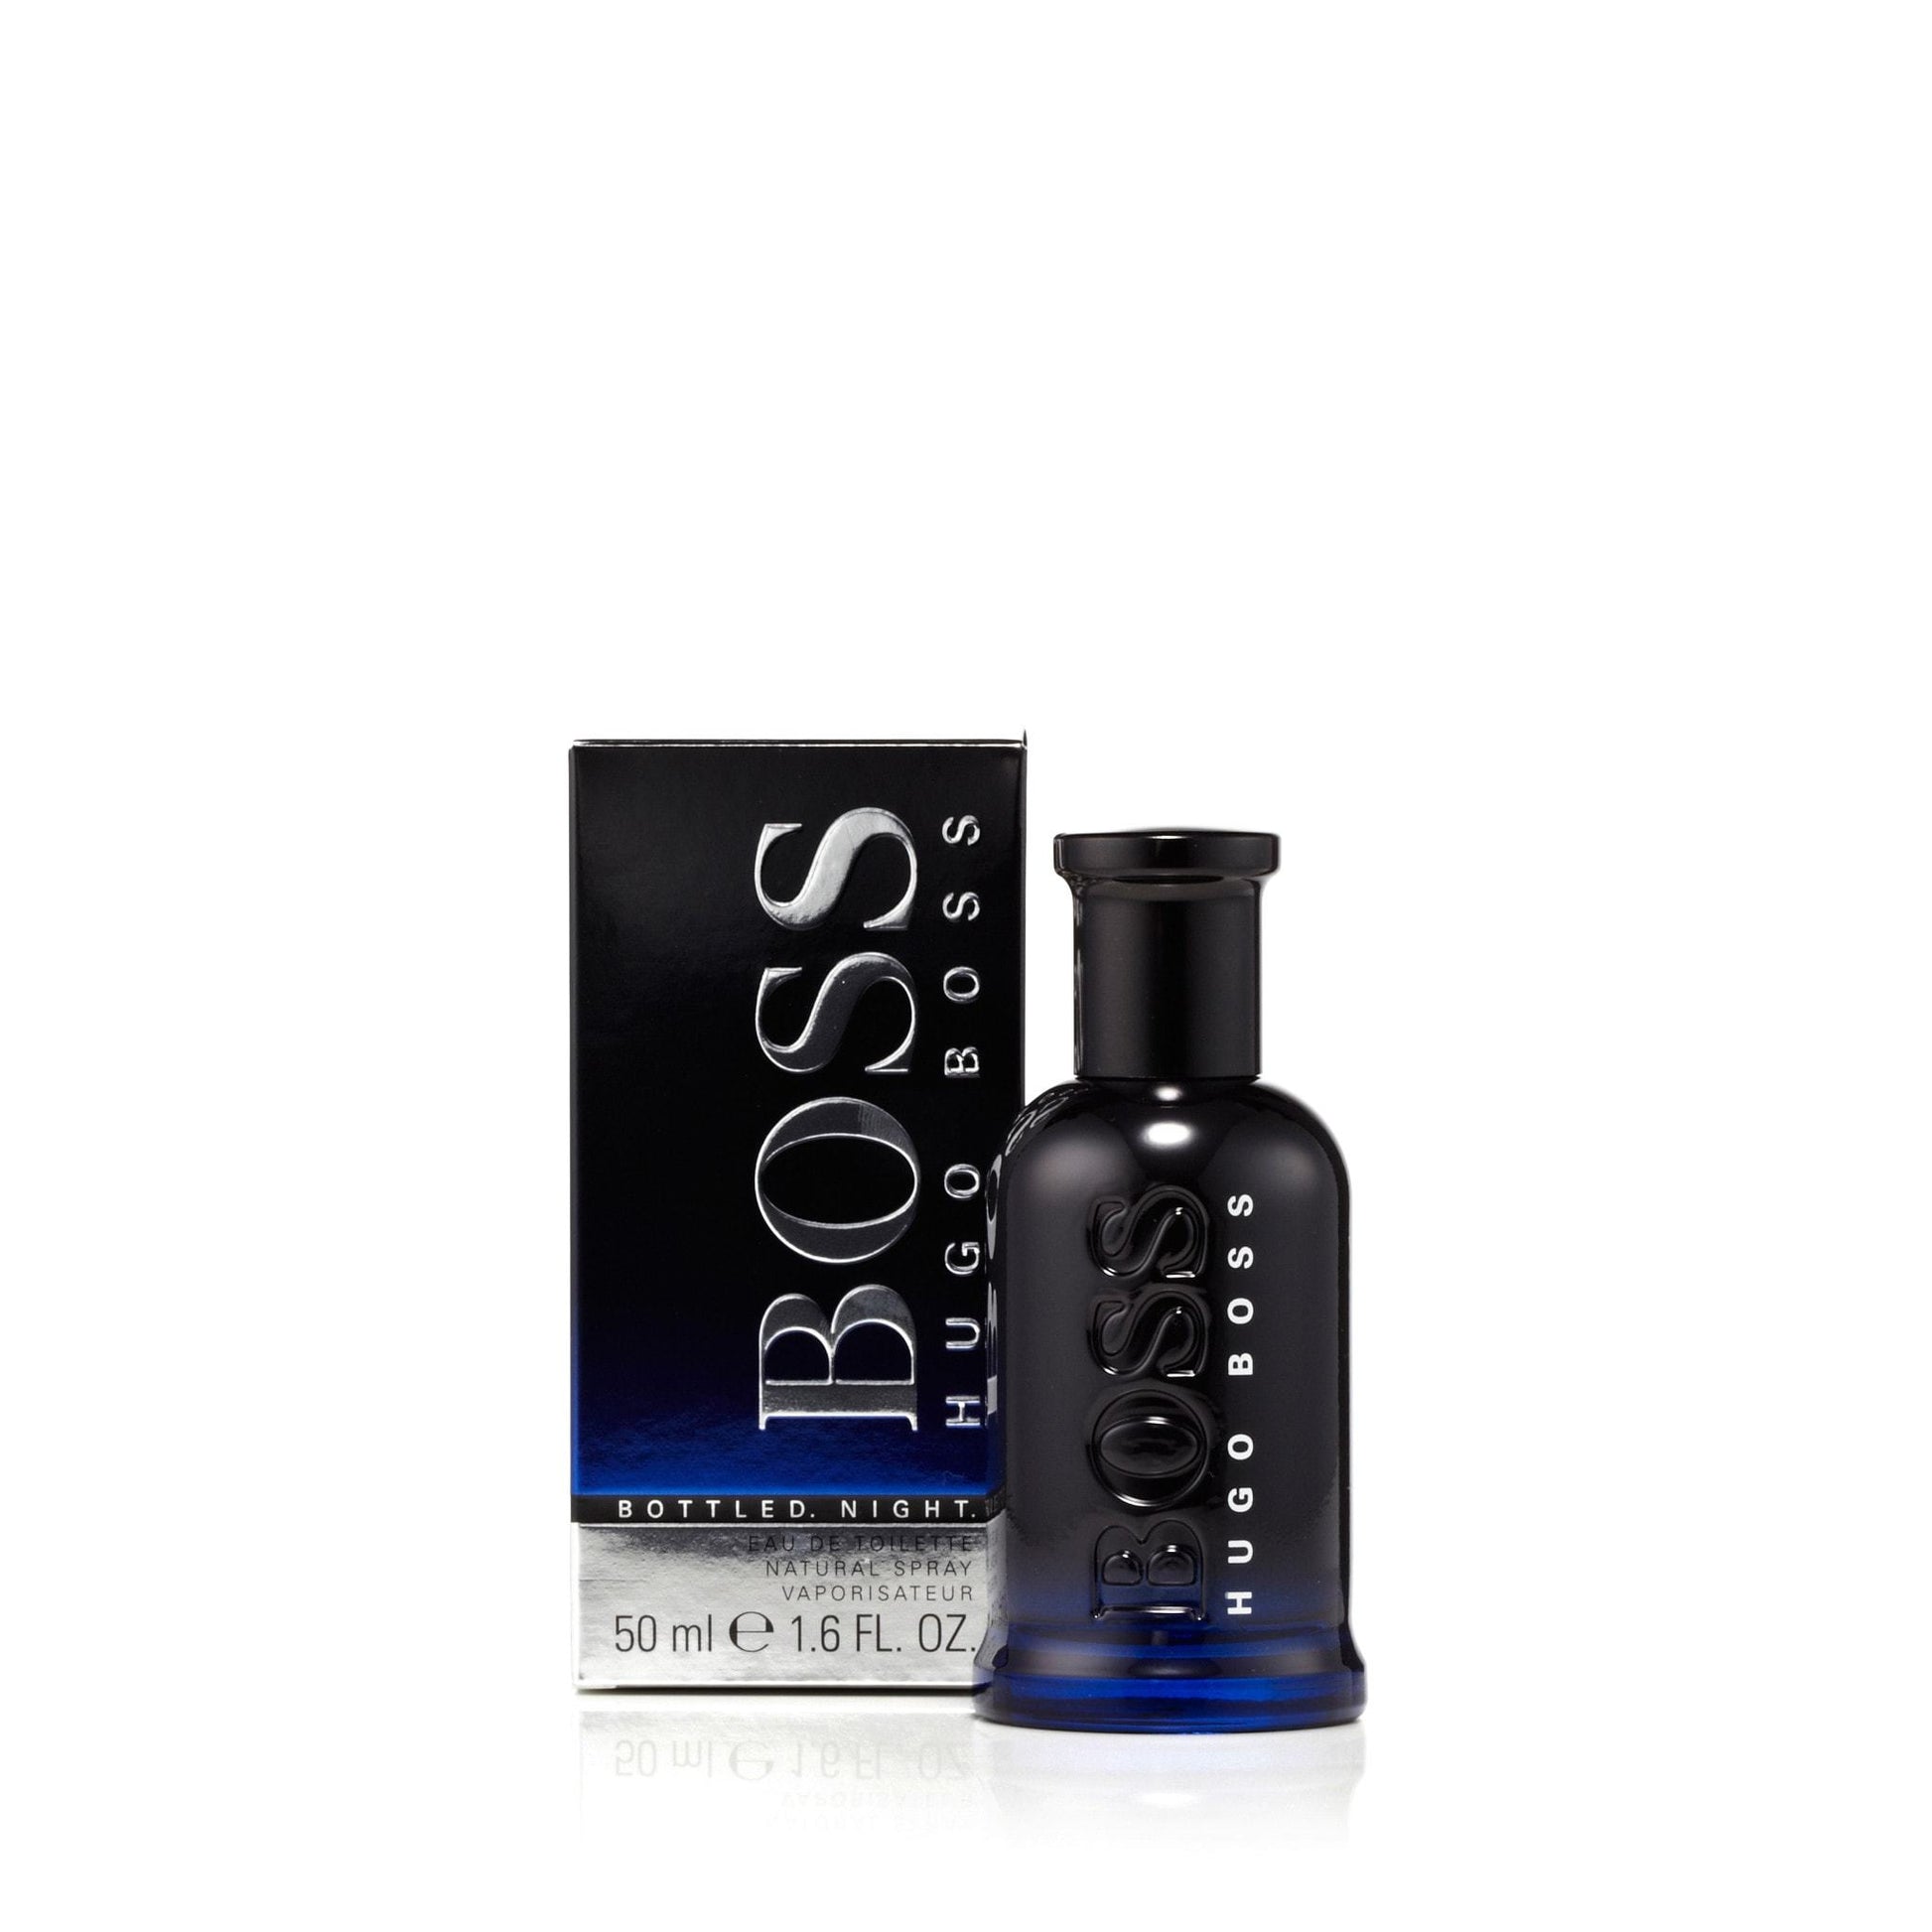 Bottled Night Eau de Toilette Spray for Men by Hugo Boss, Product image 1